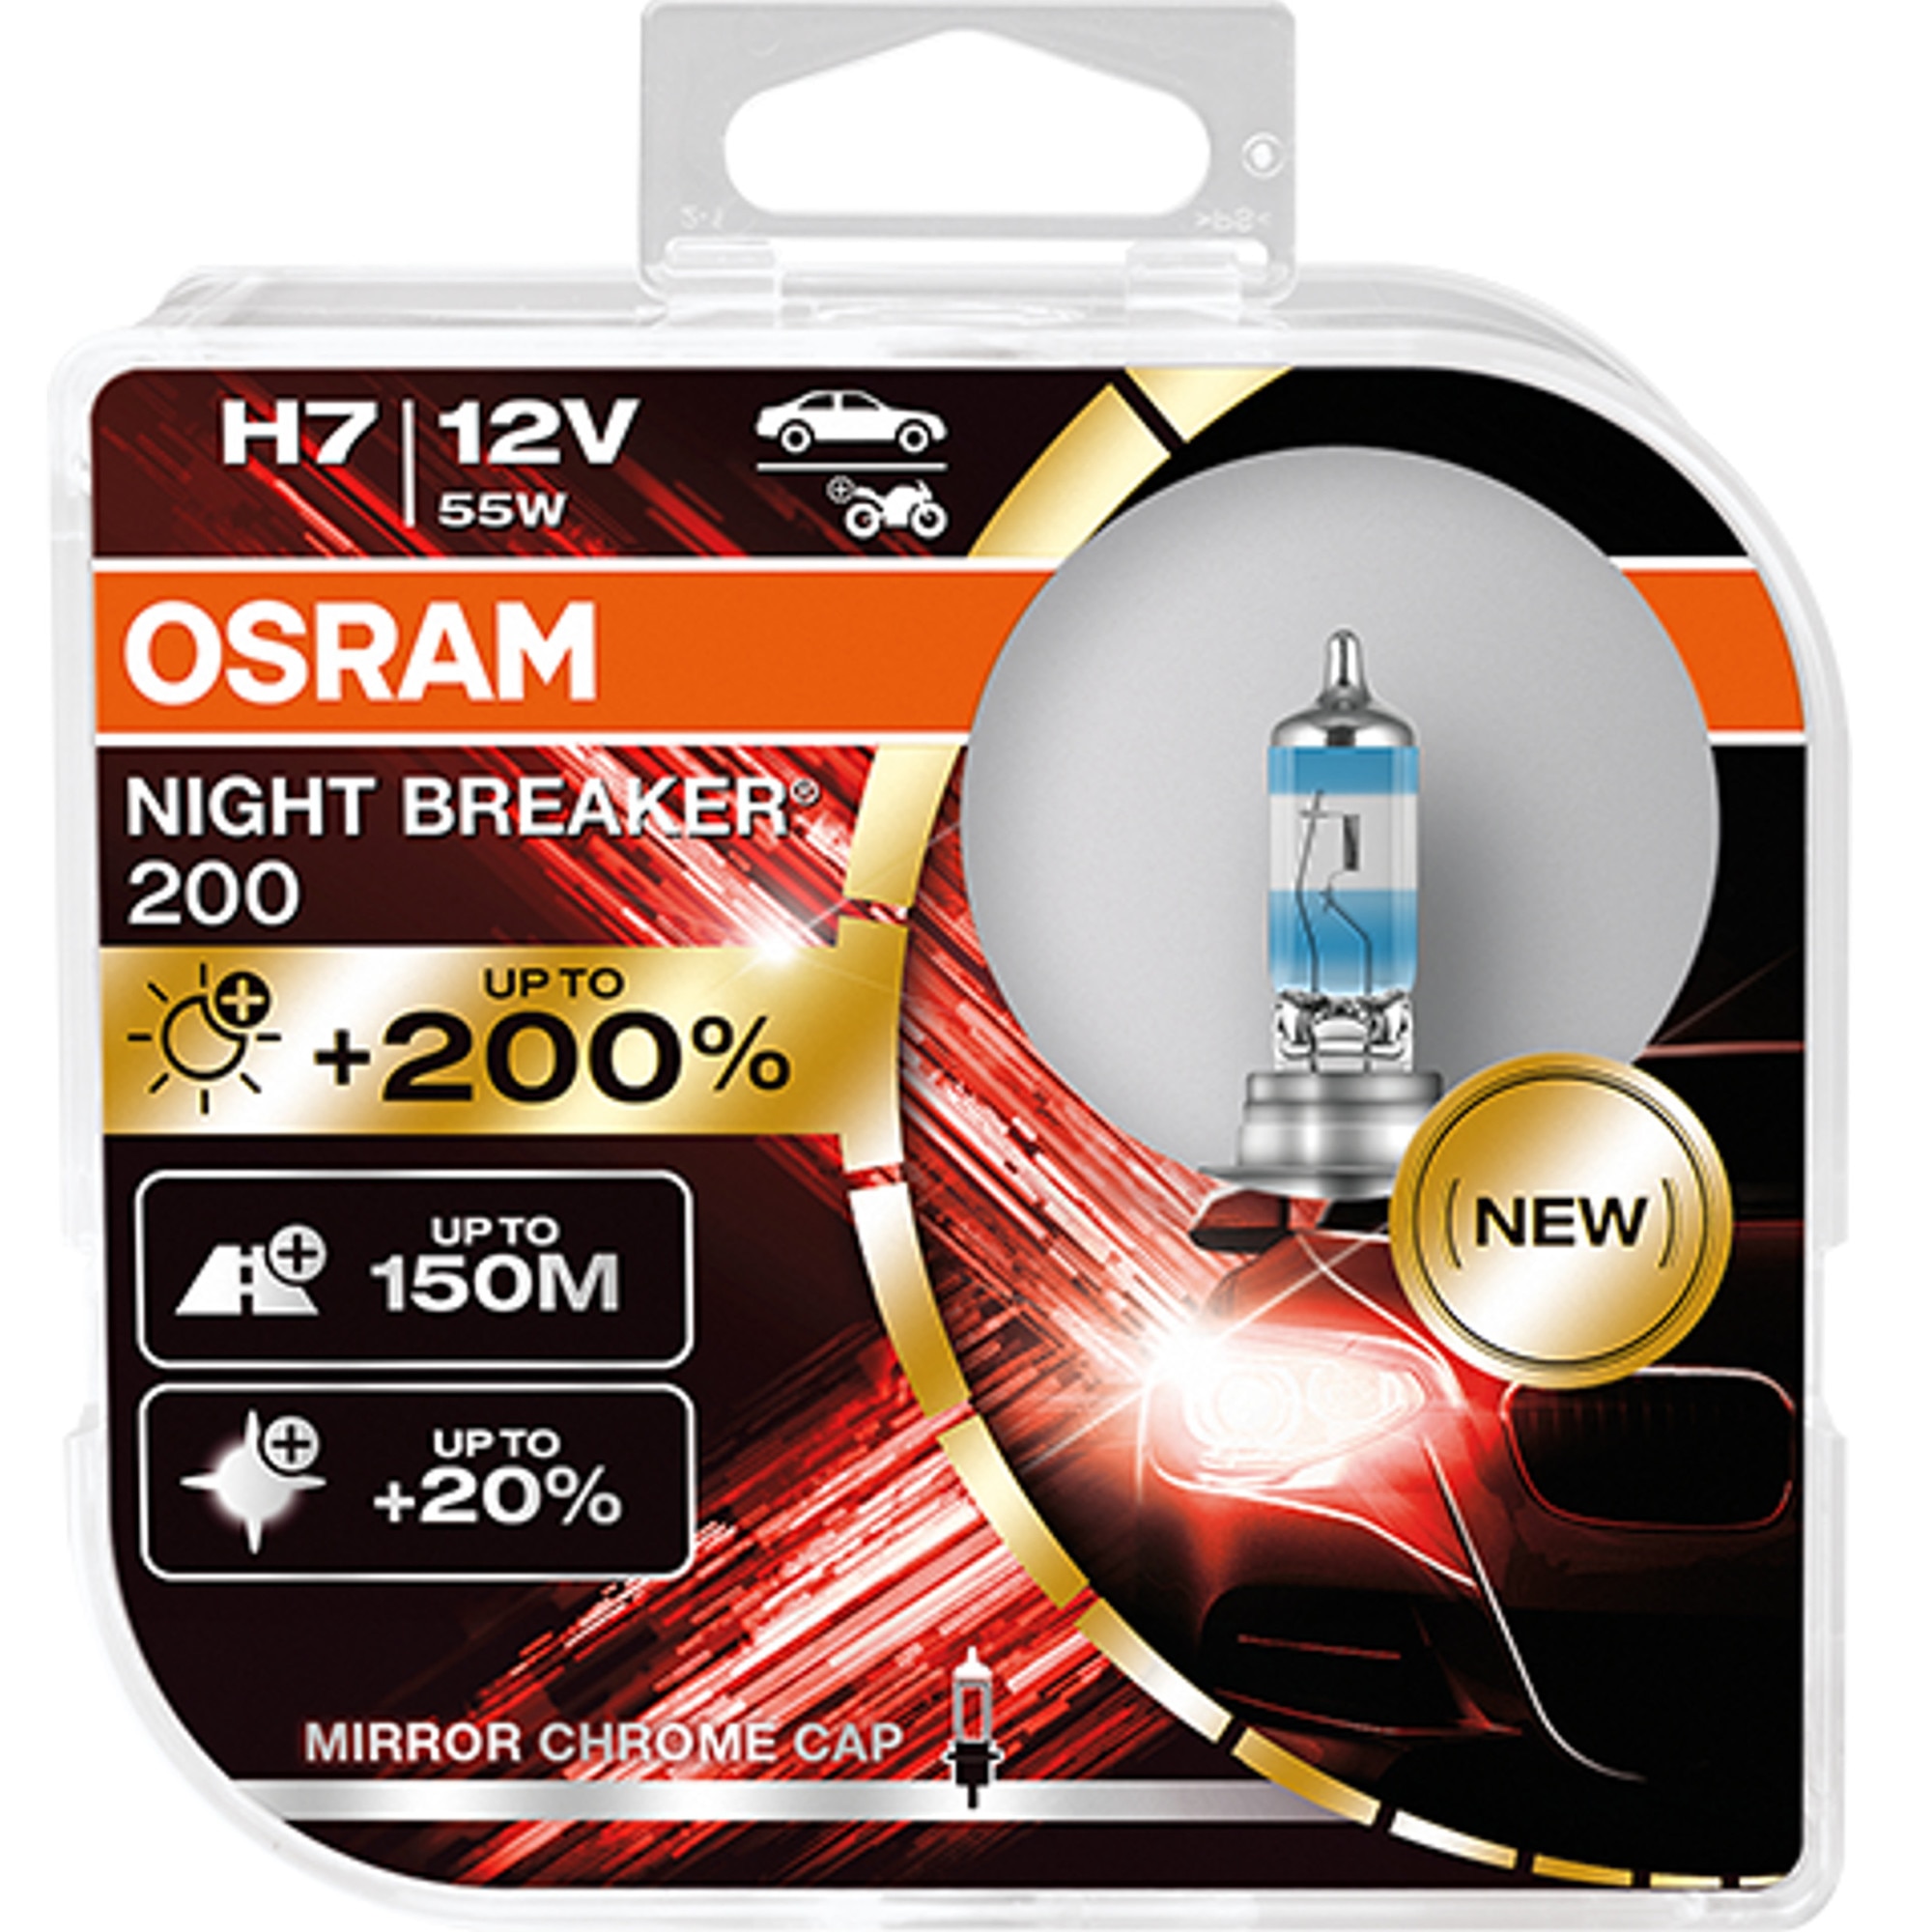 2 ampoules OSRAM Night Breaker Laser H1 12V 55W - Norauto